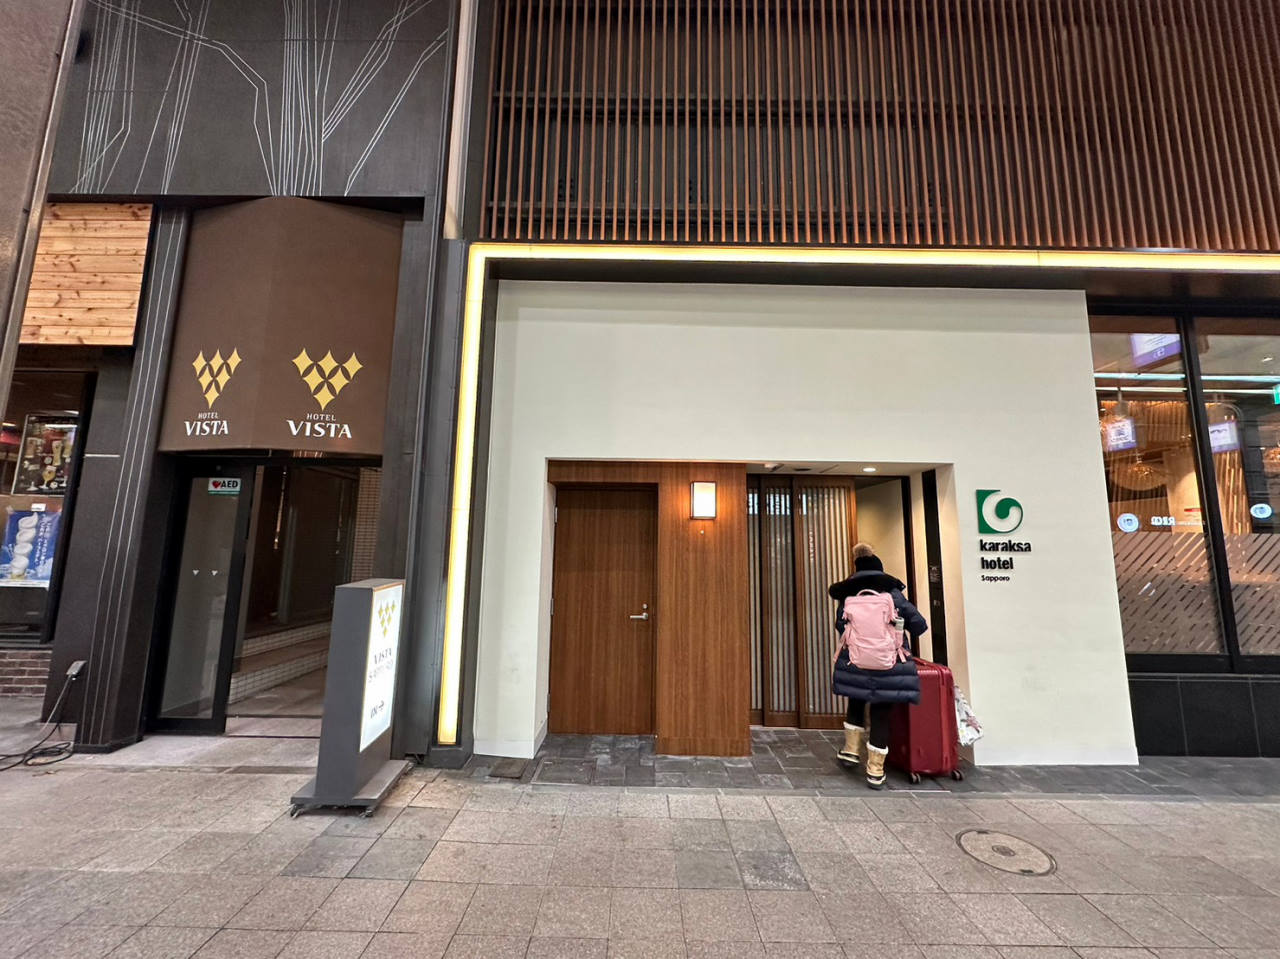 札幌住宿推薦，北海道唐草飯店Karaksa Hotel Sapproro，在狸小路上超方便逛街買藥妝，還有登別溫泉大浴場好讚